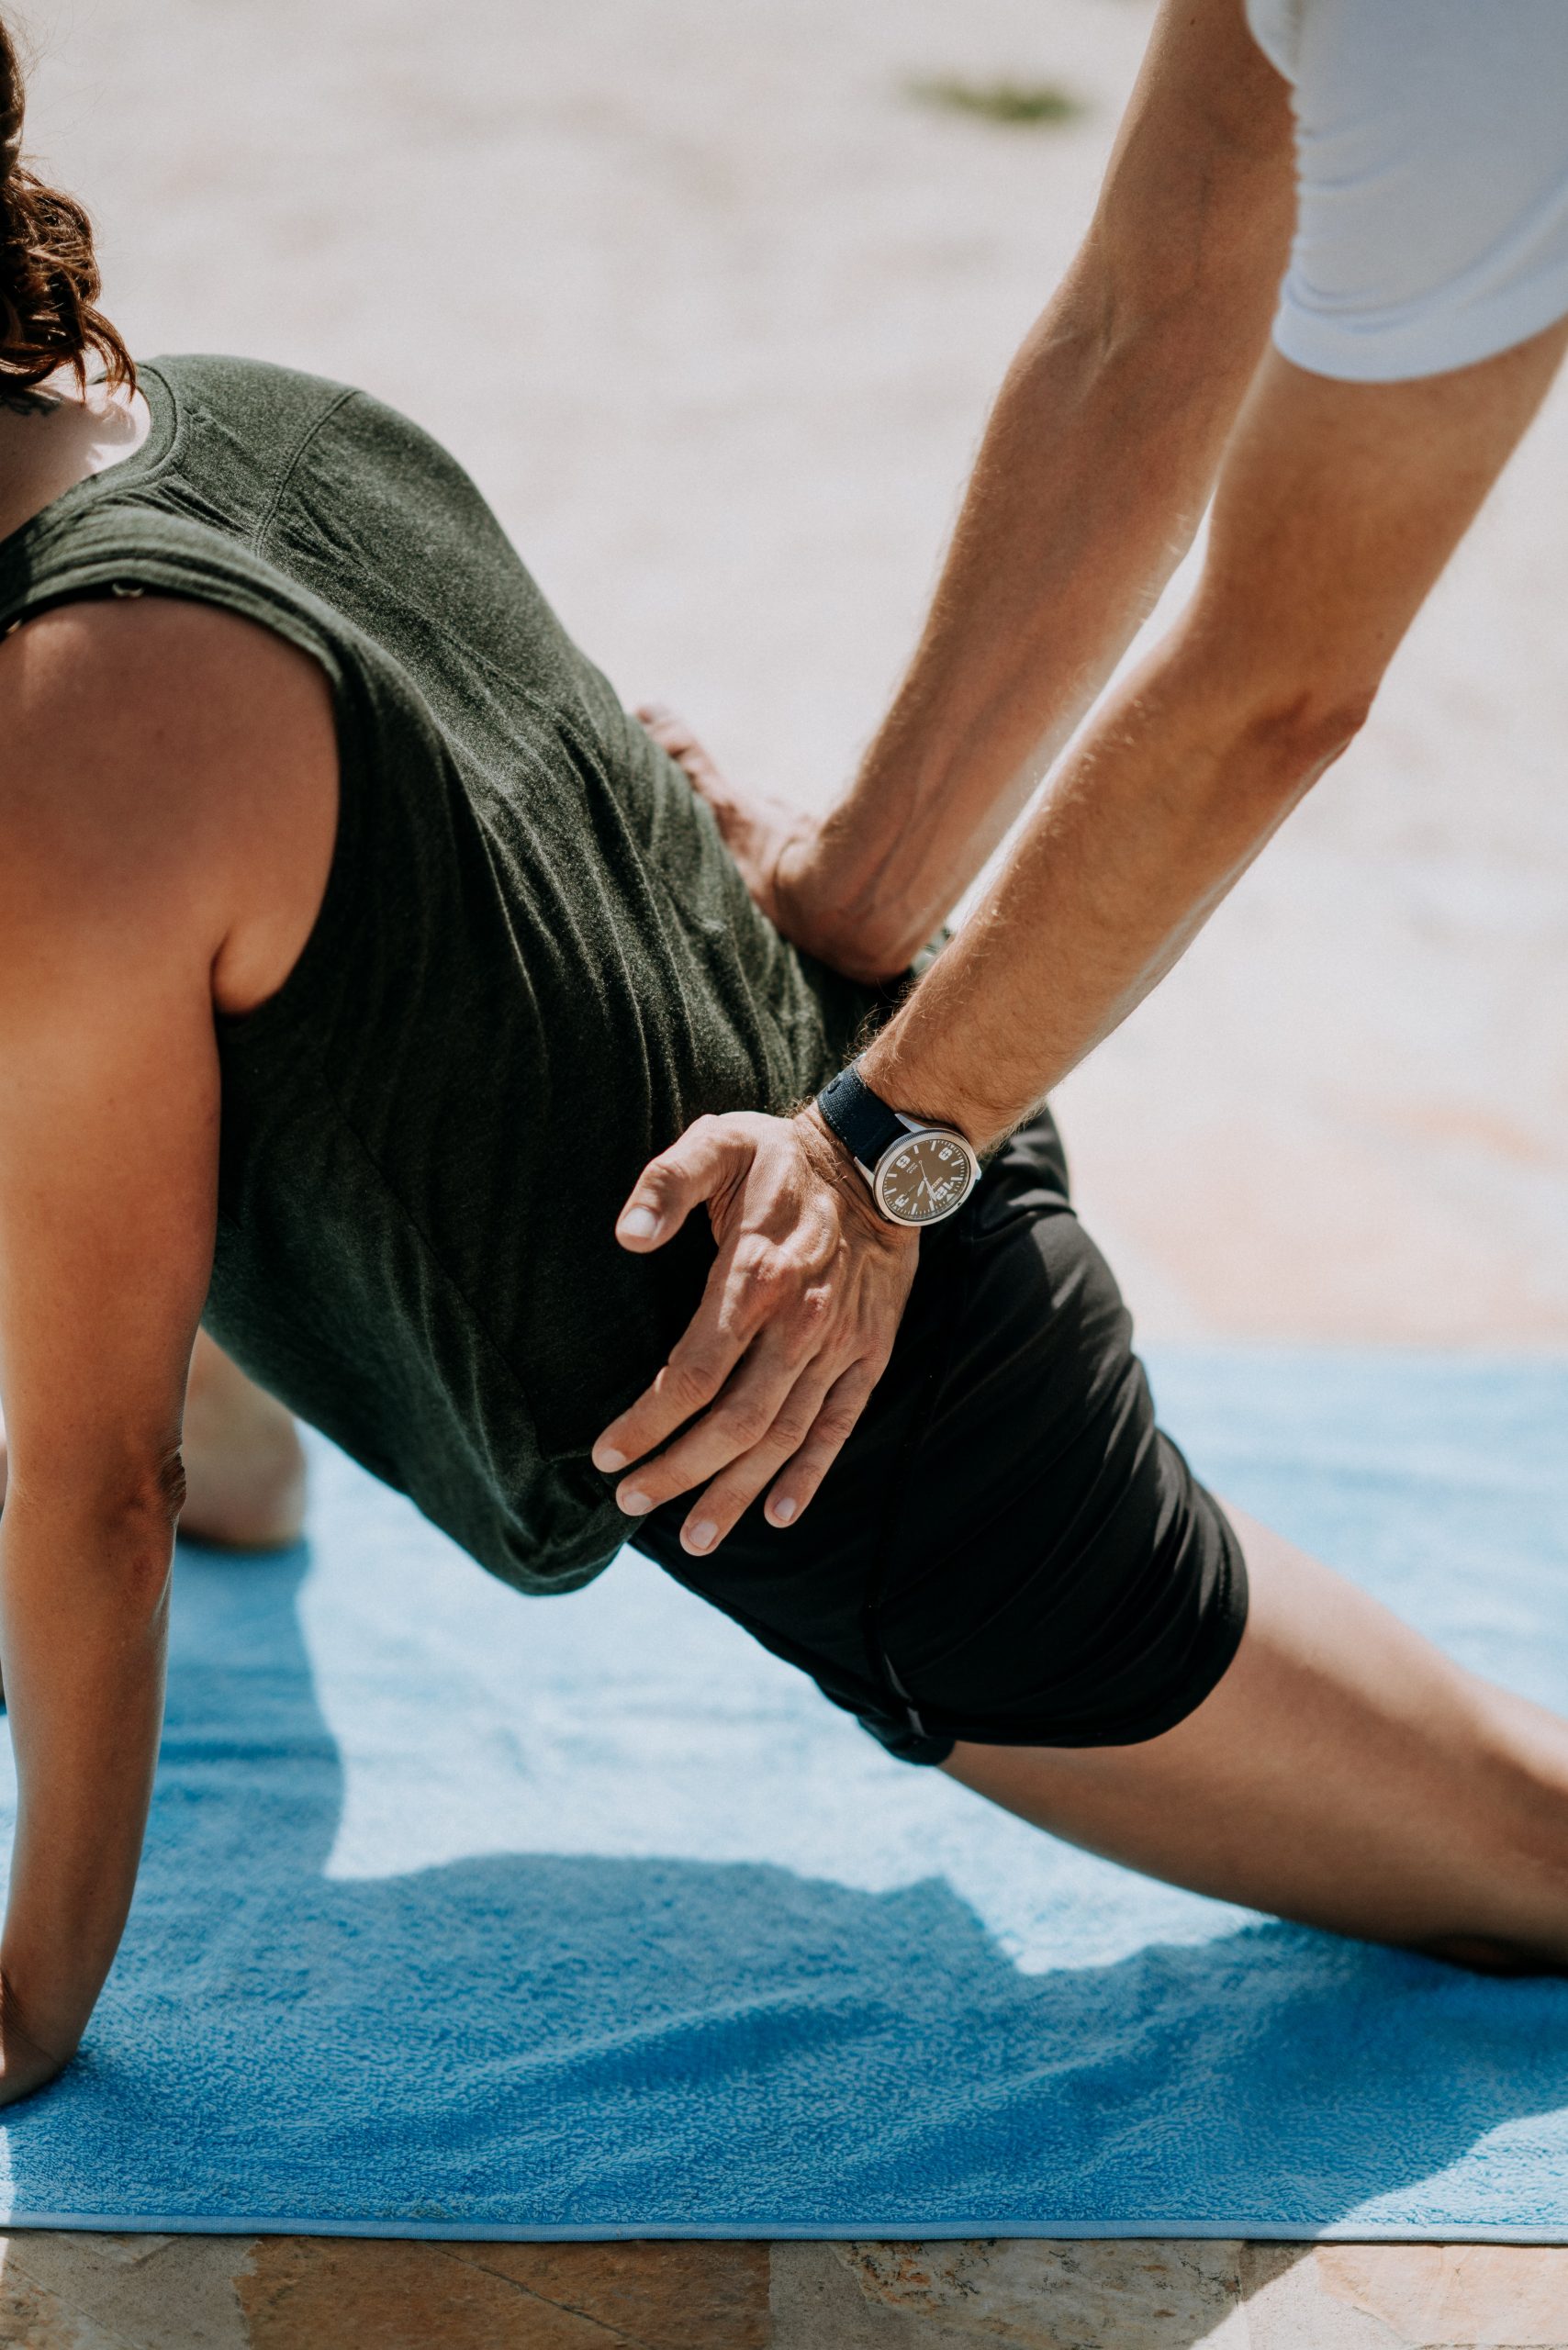 Justering af nedre ryg i yogastilling